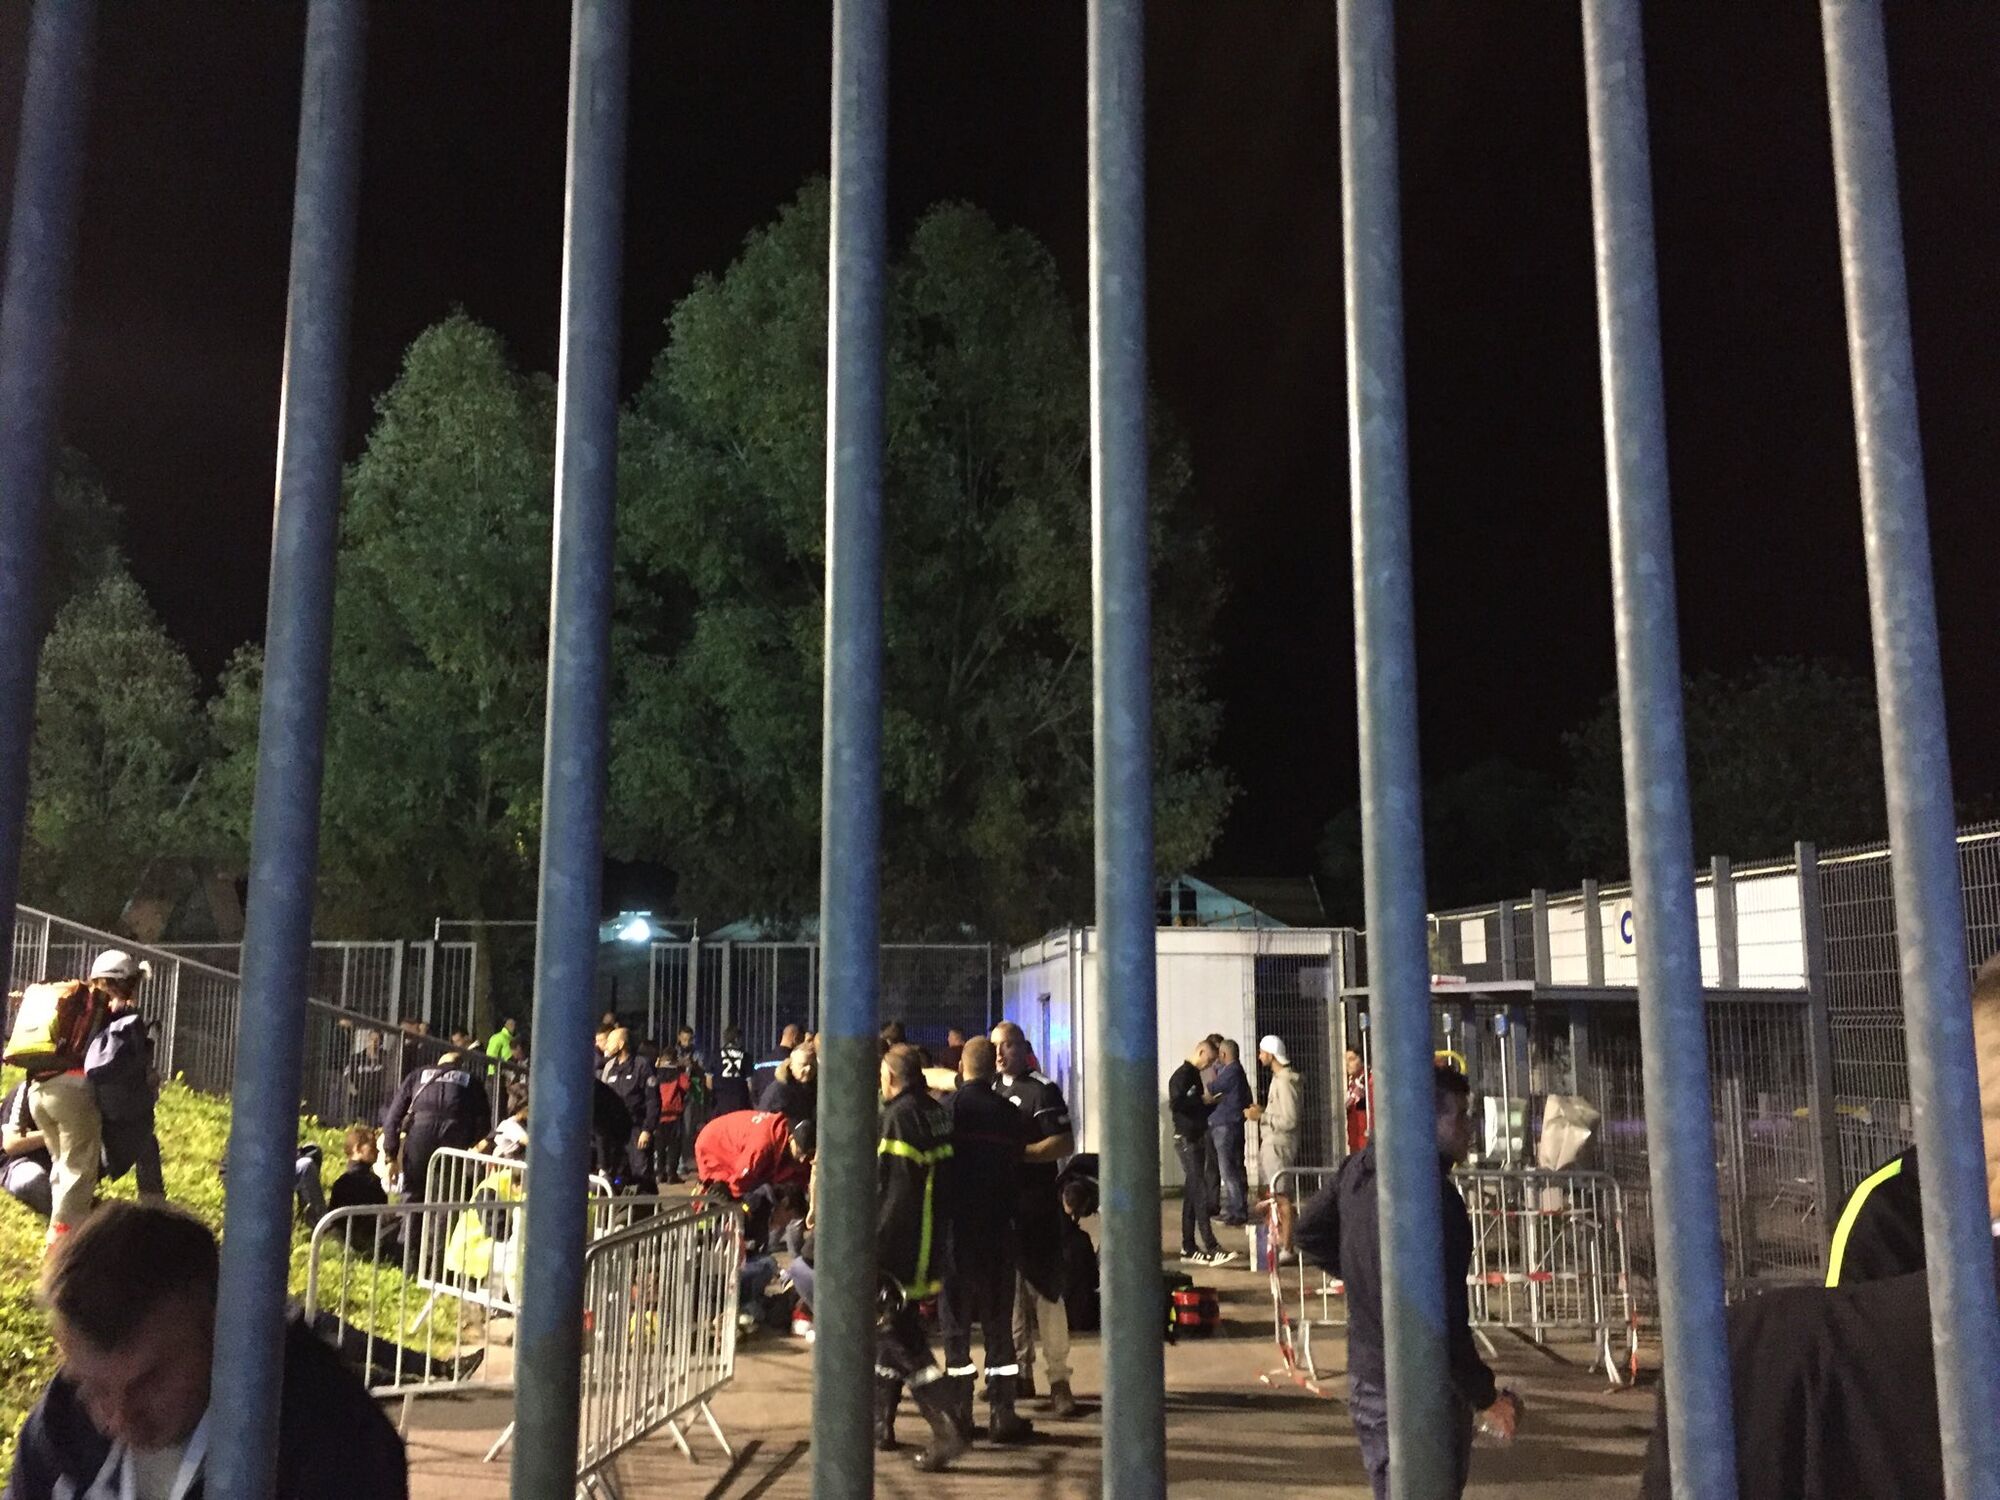 Во Франции во время футбола рухнула трибуна: есть пострадавшие - опубликованы фото с места трагедии